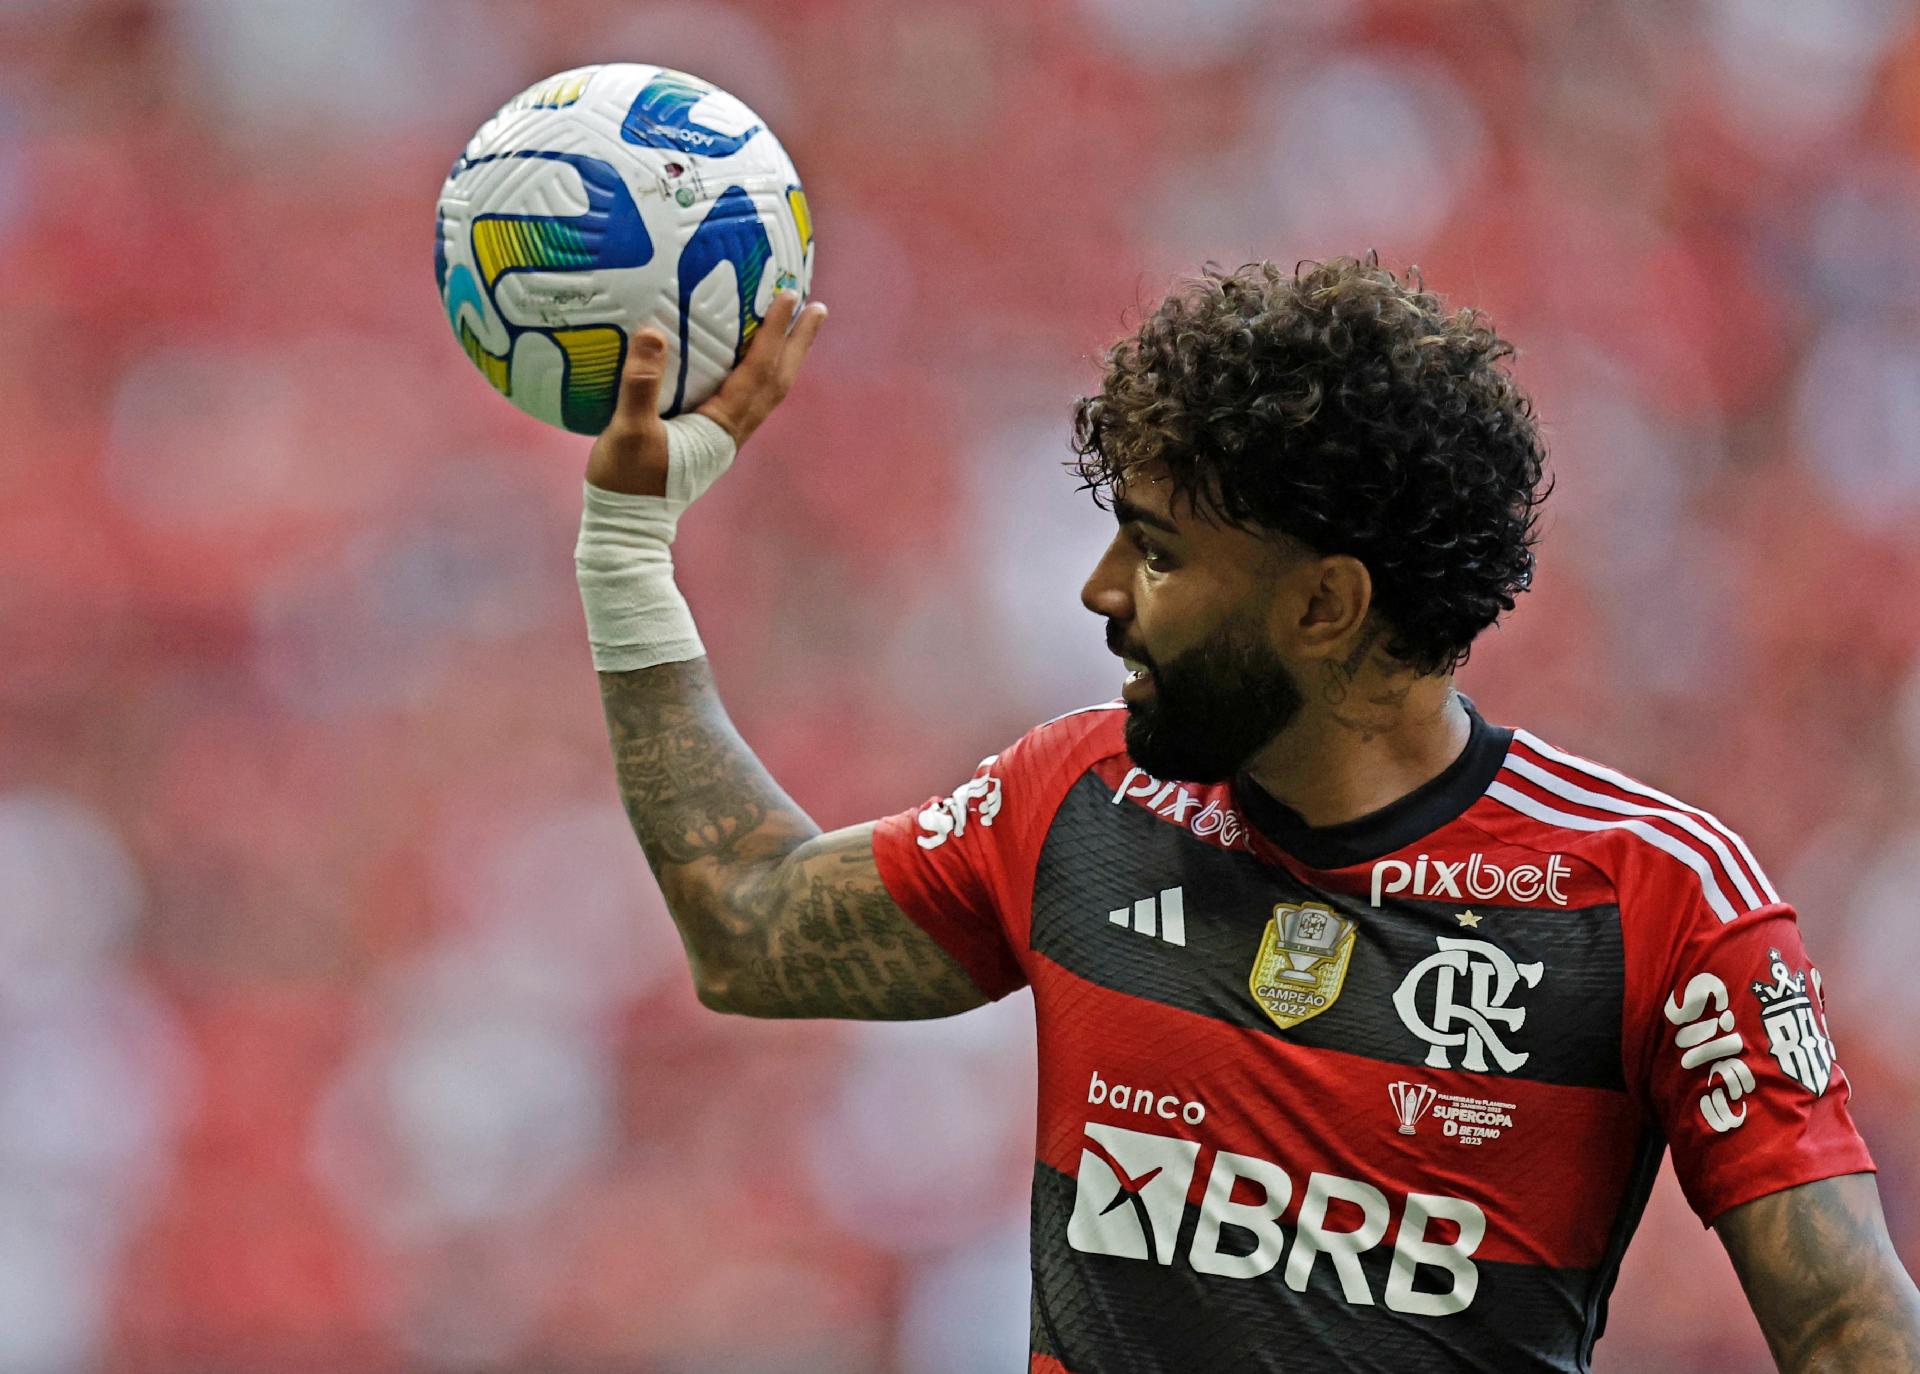 Flamengo divulga lista com 31 jogadores relacionados para o Mundial de  Clubes, flamengo